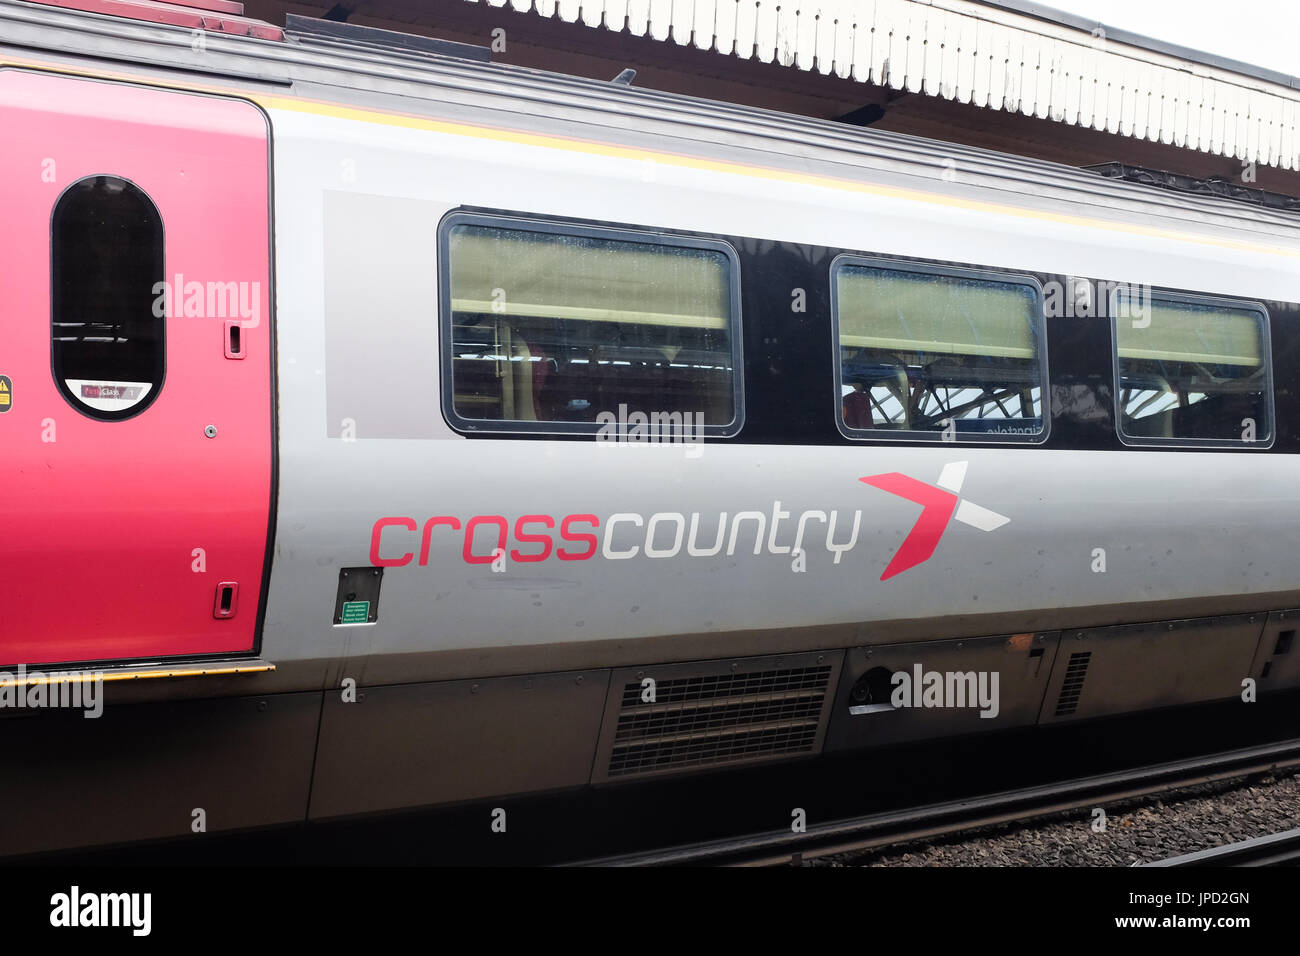 Ein CrossCountry-Zug von Arriva Trains UK betrieben. Stockfoto